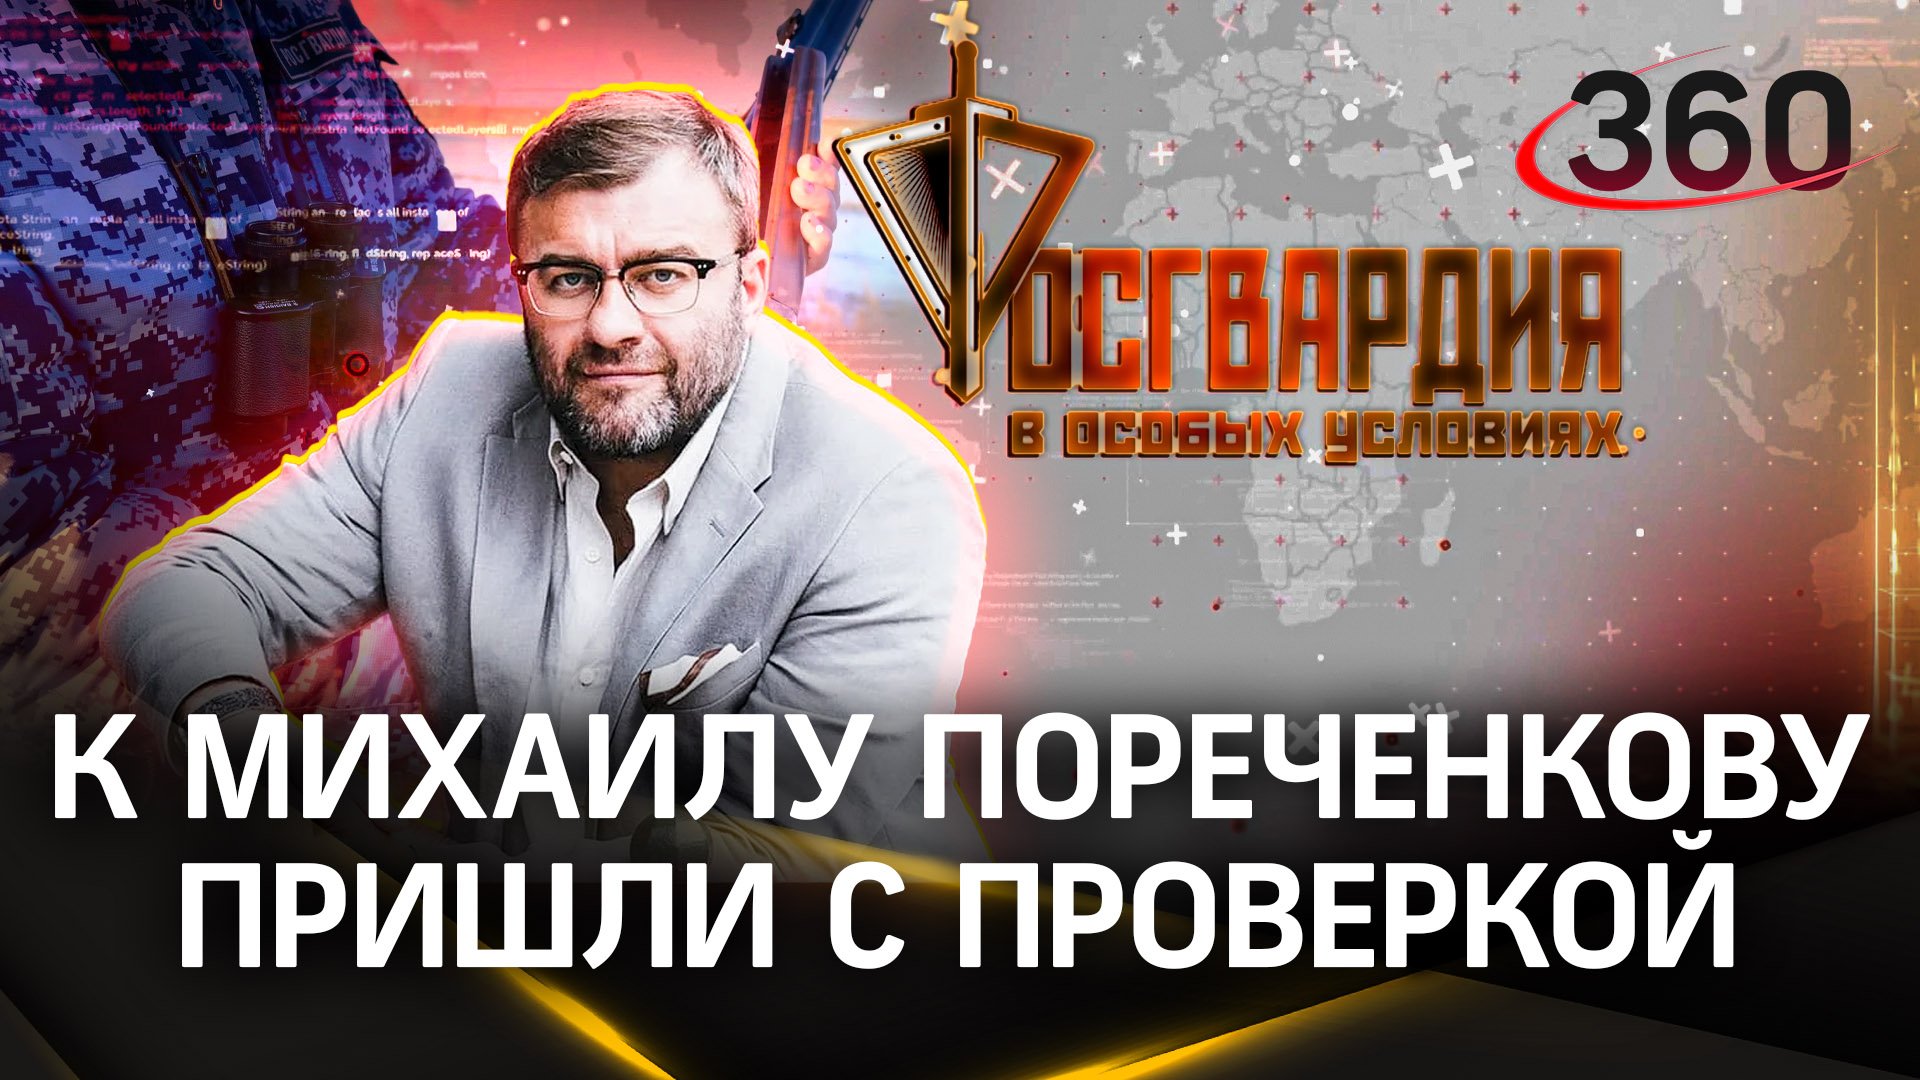 Михаил Пореченков хранит дома оружие – к нему пришли с проверкой